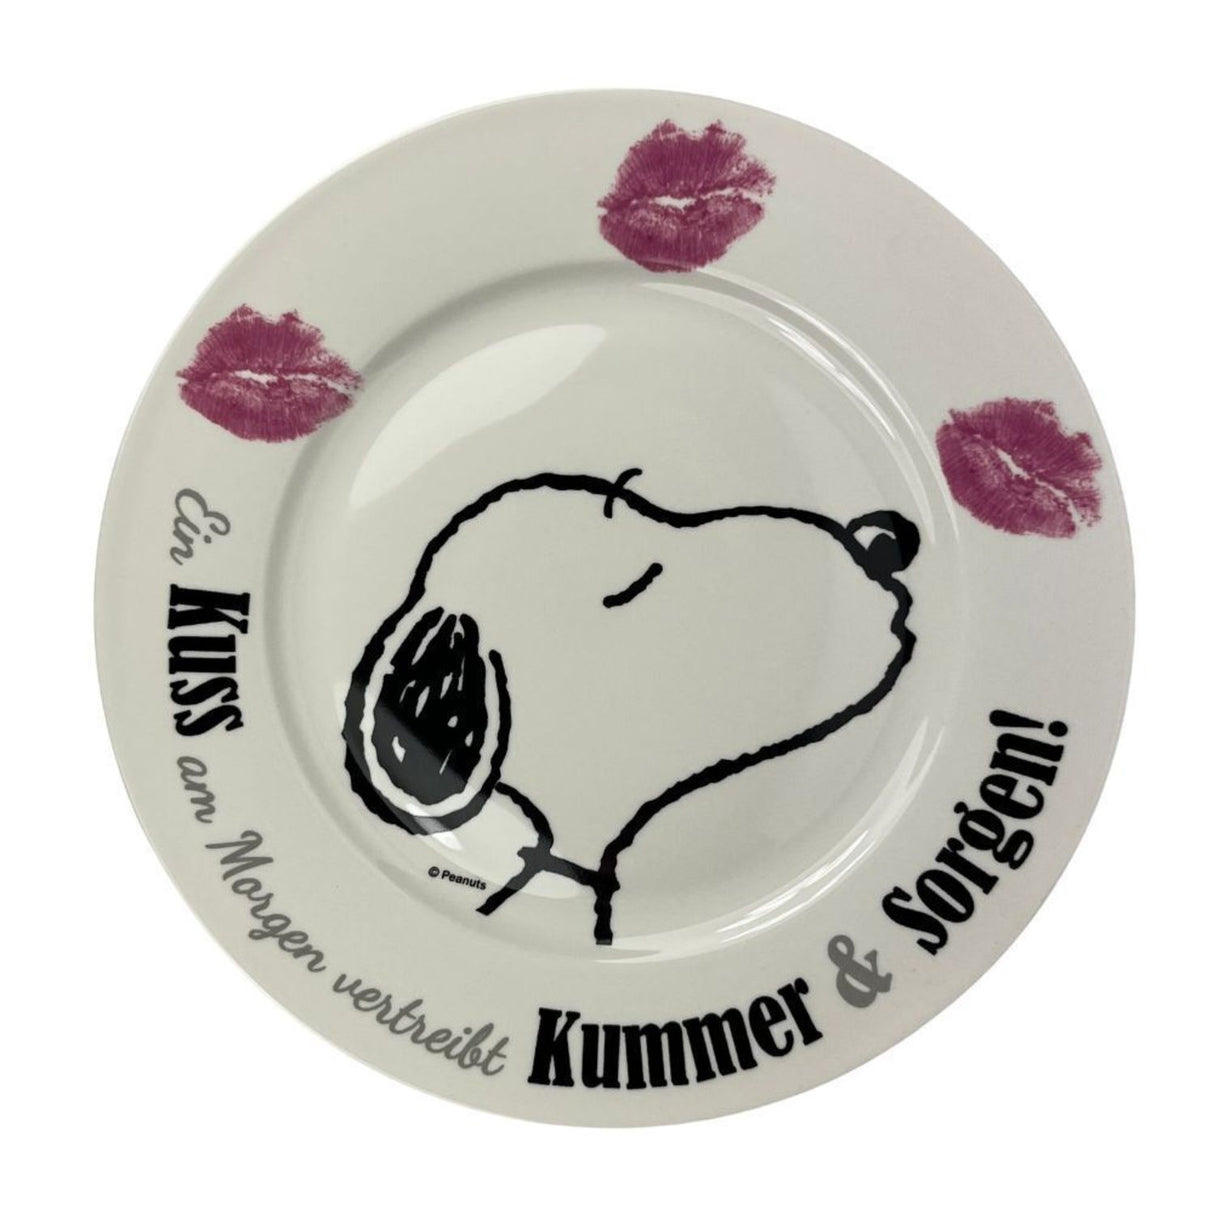 Snoopy - Ein Kuss am Morgen Geschirrset mit Teller, Tasse und Schüssel